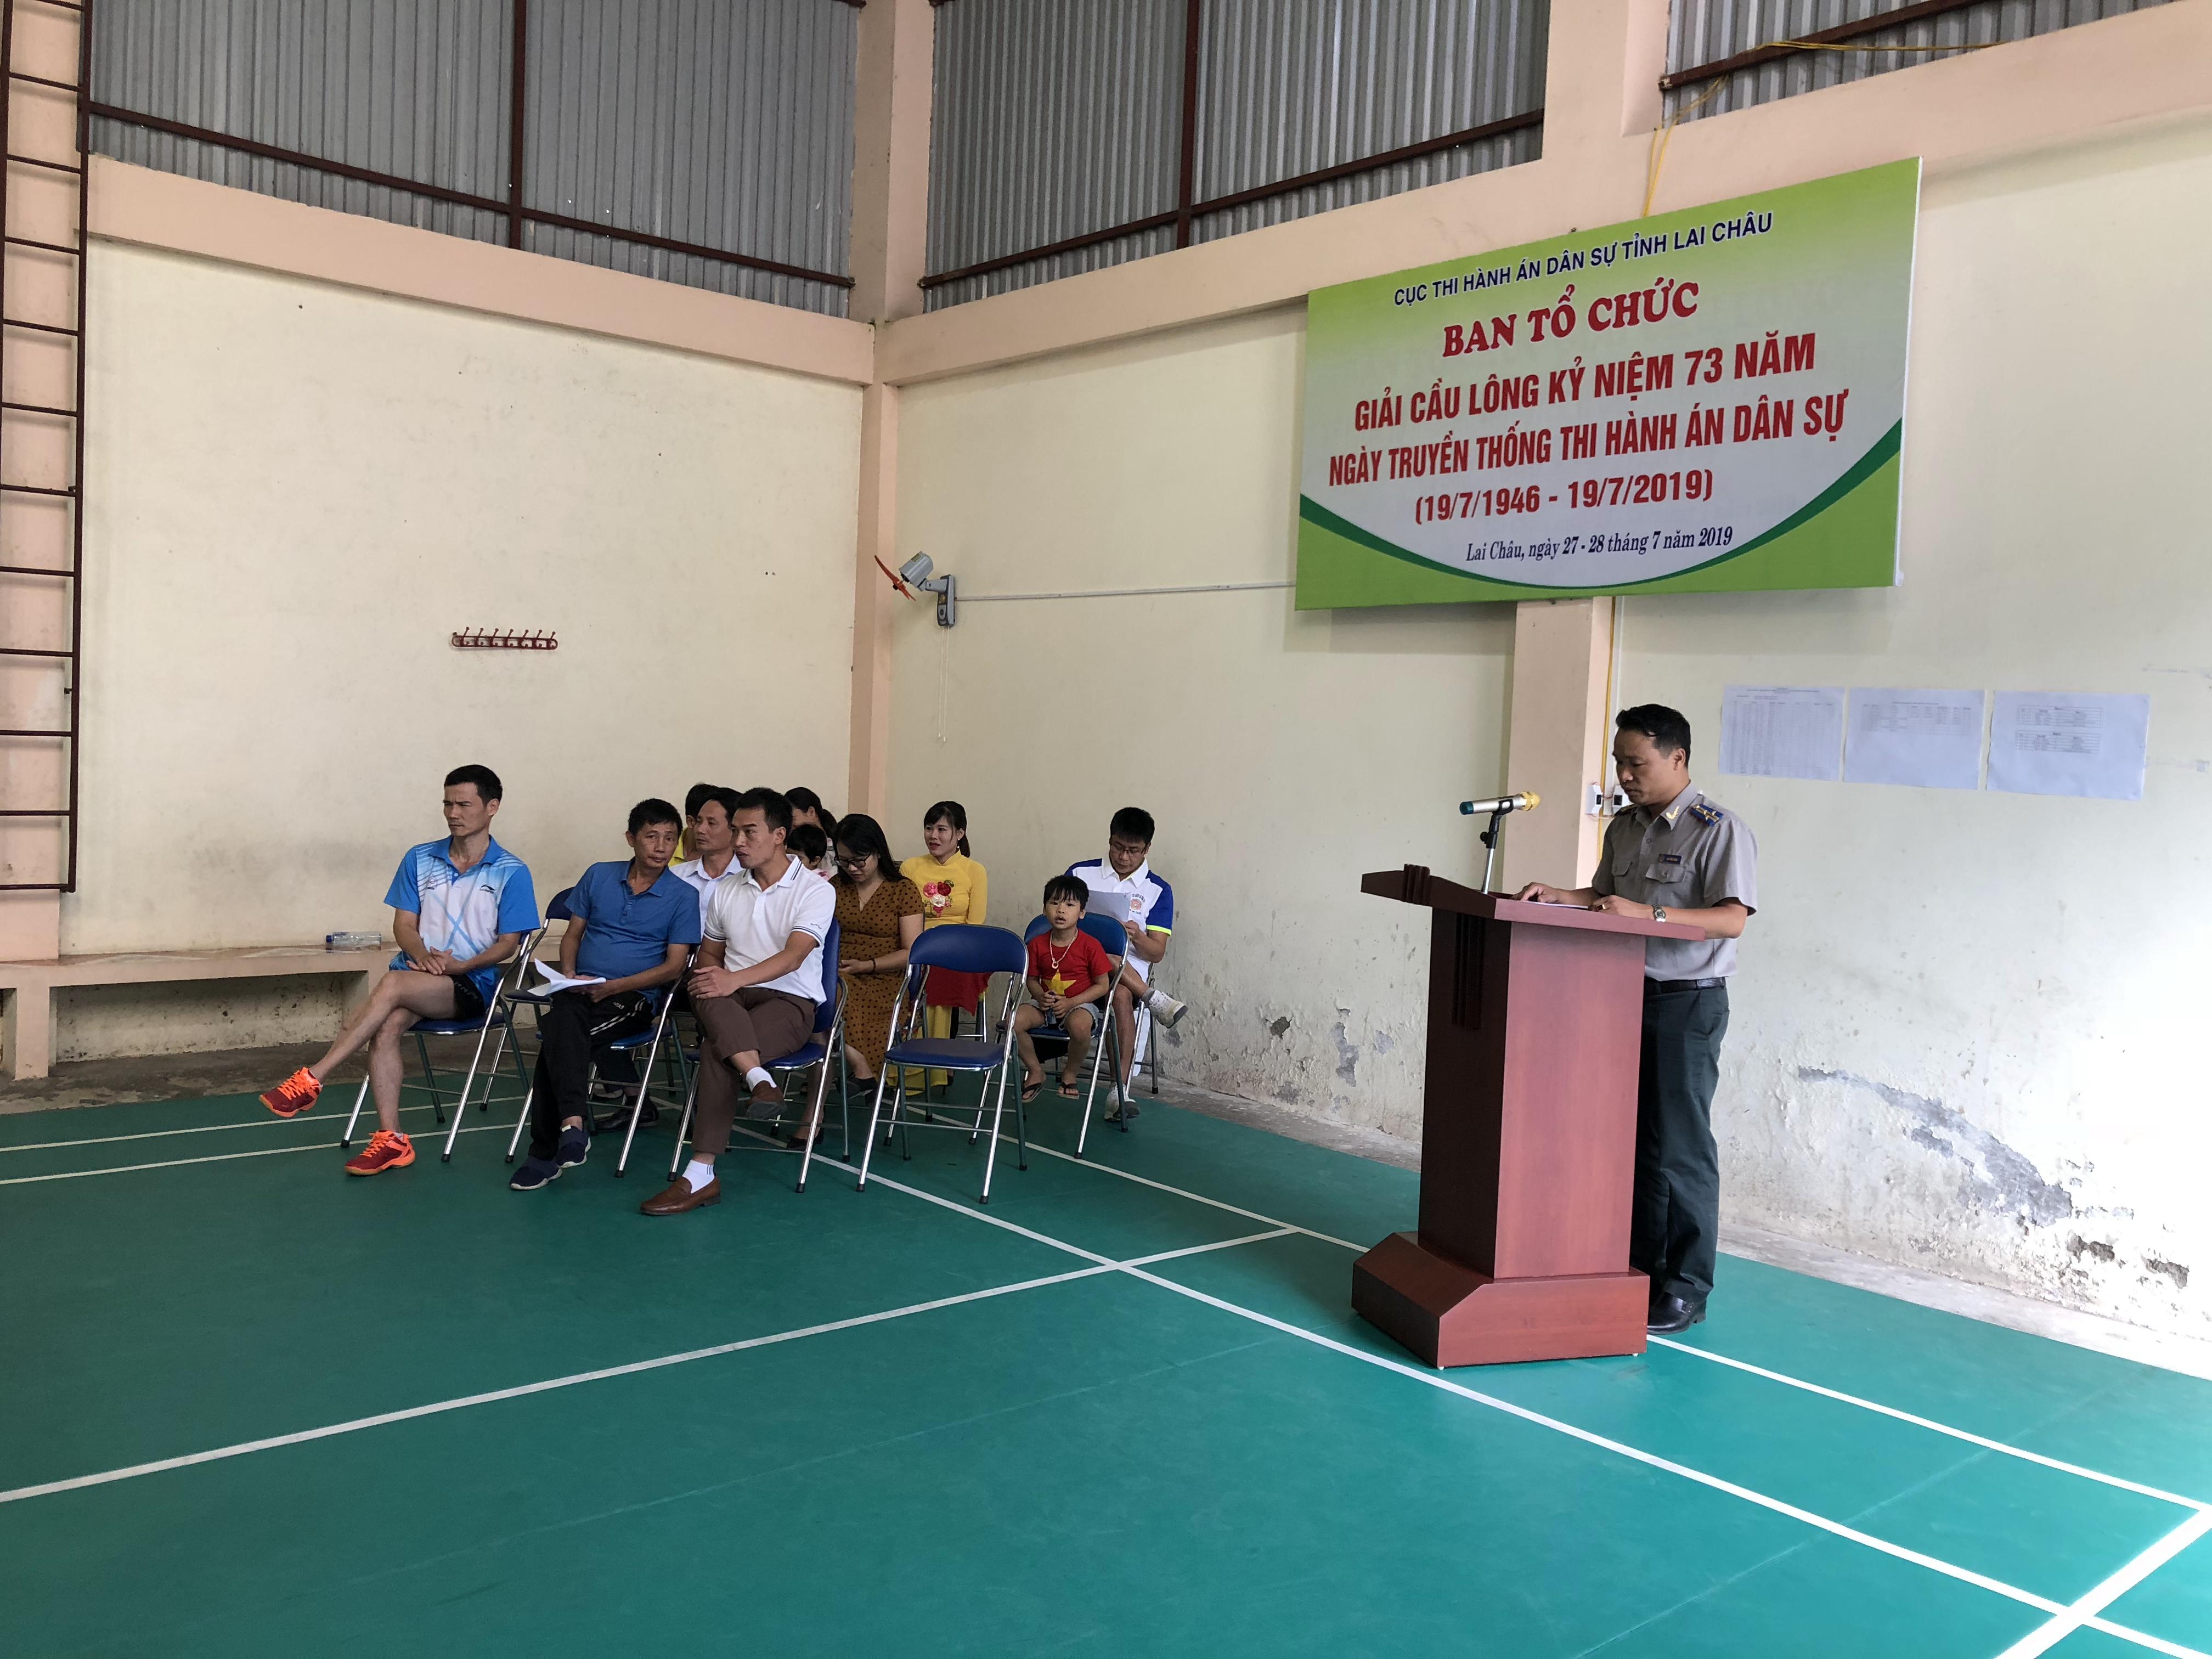 Cục Thi hành án dân sự tỉnh Lai Châu tổ chức giải cầu lông kỷ niệm 73 năm Ngày truyền thống thi hành án dân sự (19/7/1946 – 19/7/2019)